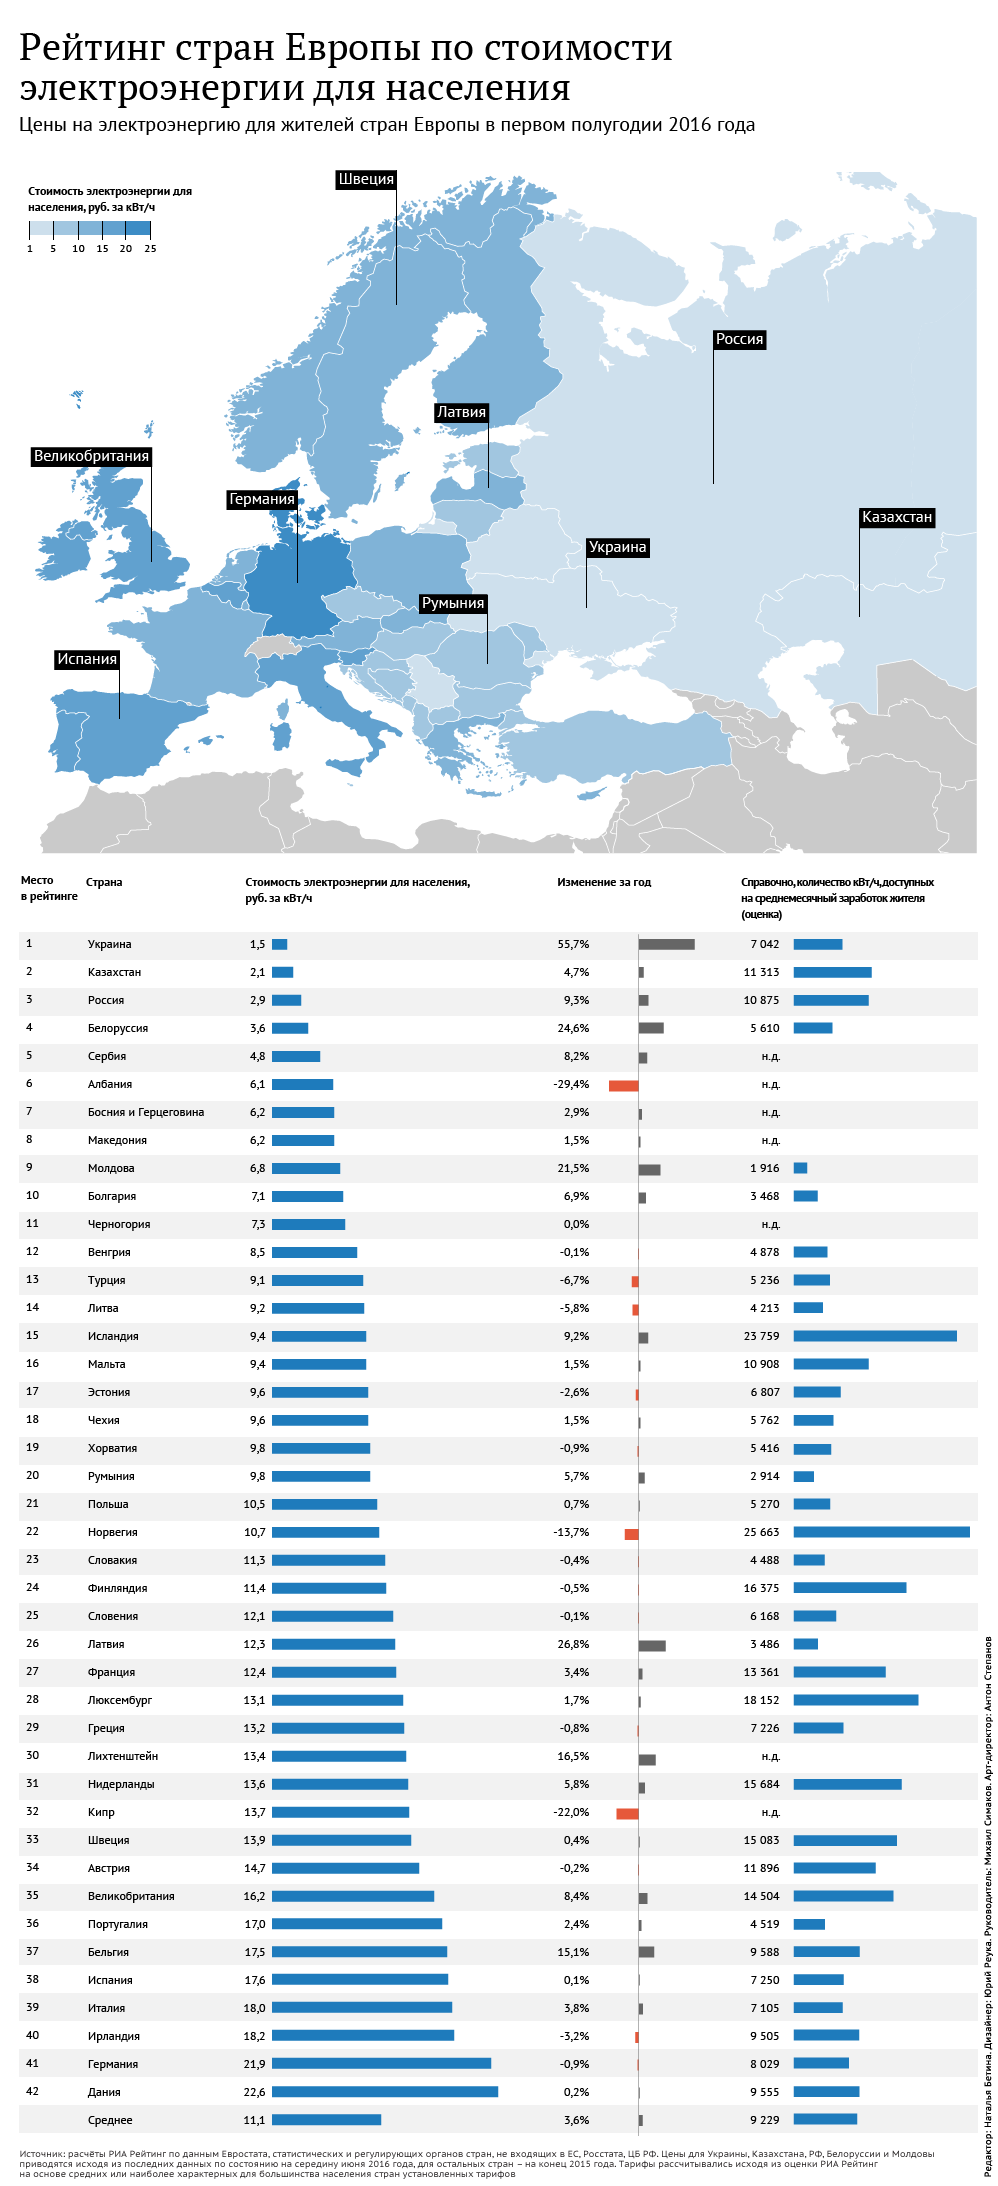 Рейтинг европейских стран по ценам на электроэнергию